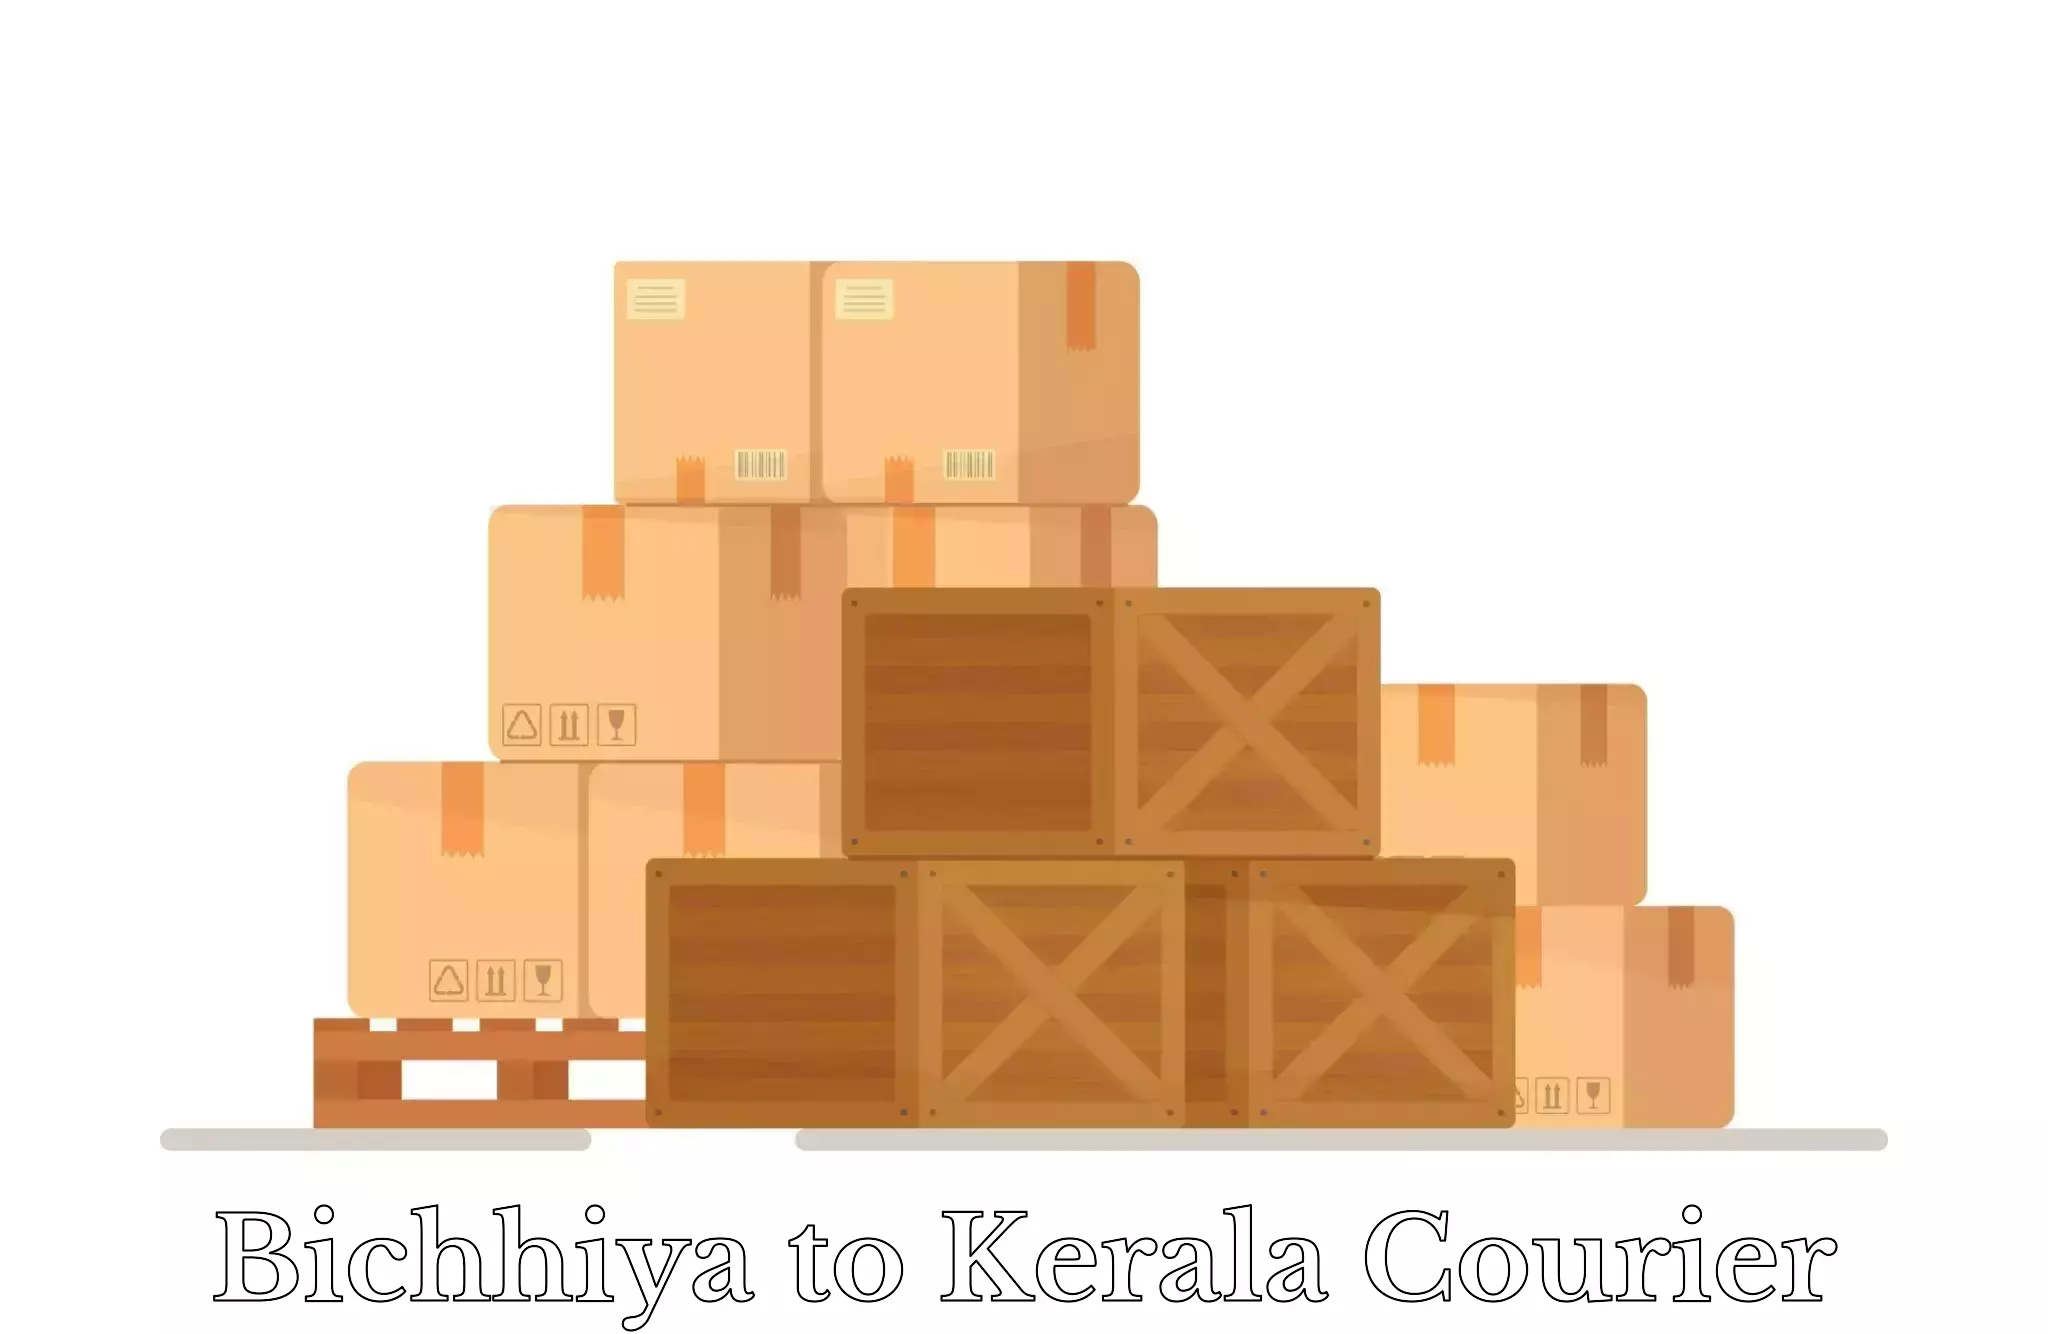 Doorstep luggage pickup Bichhiya to Munnar